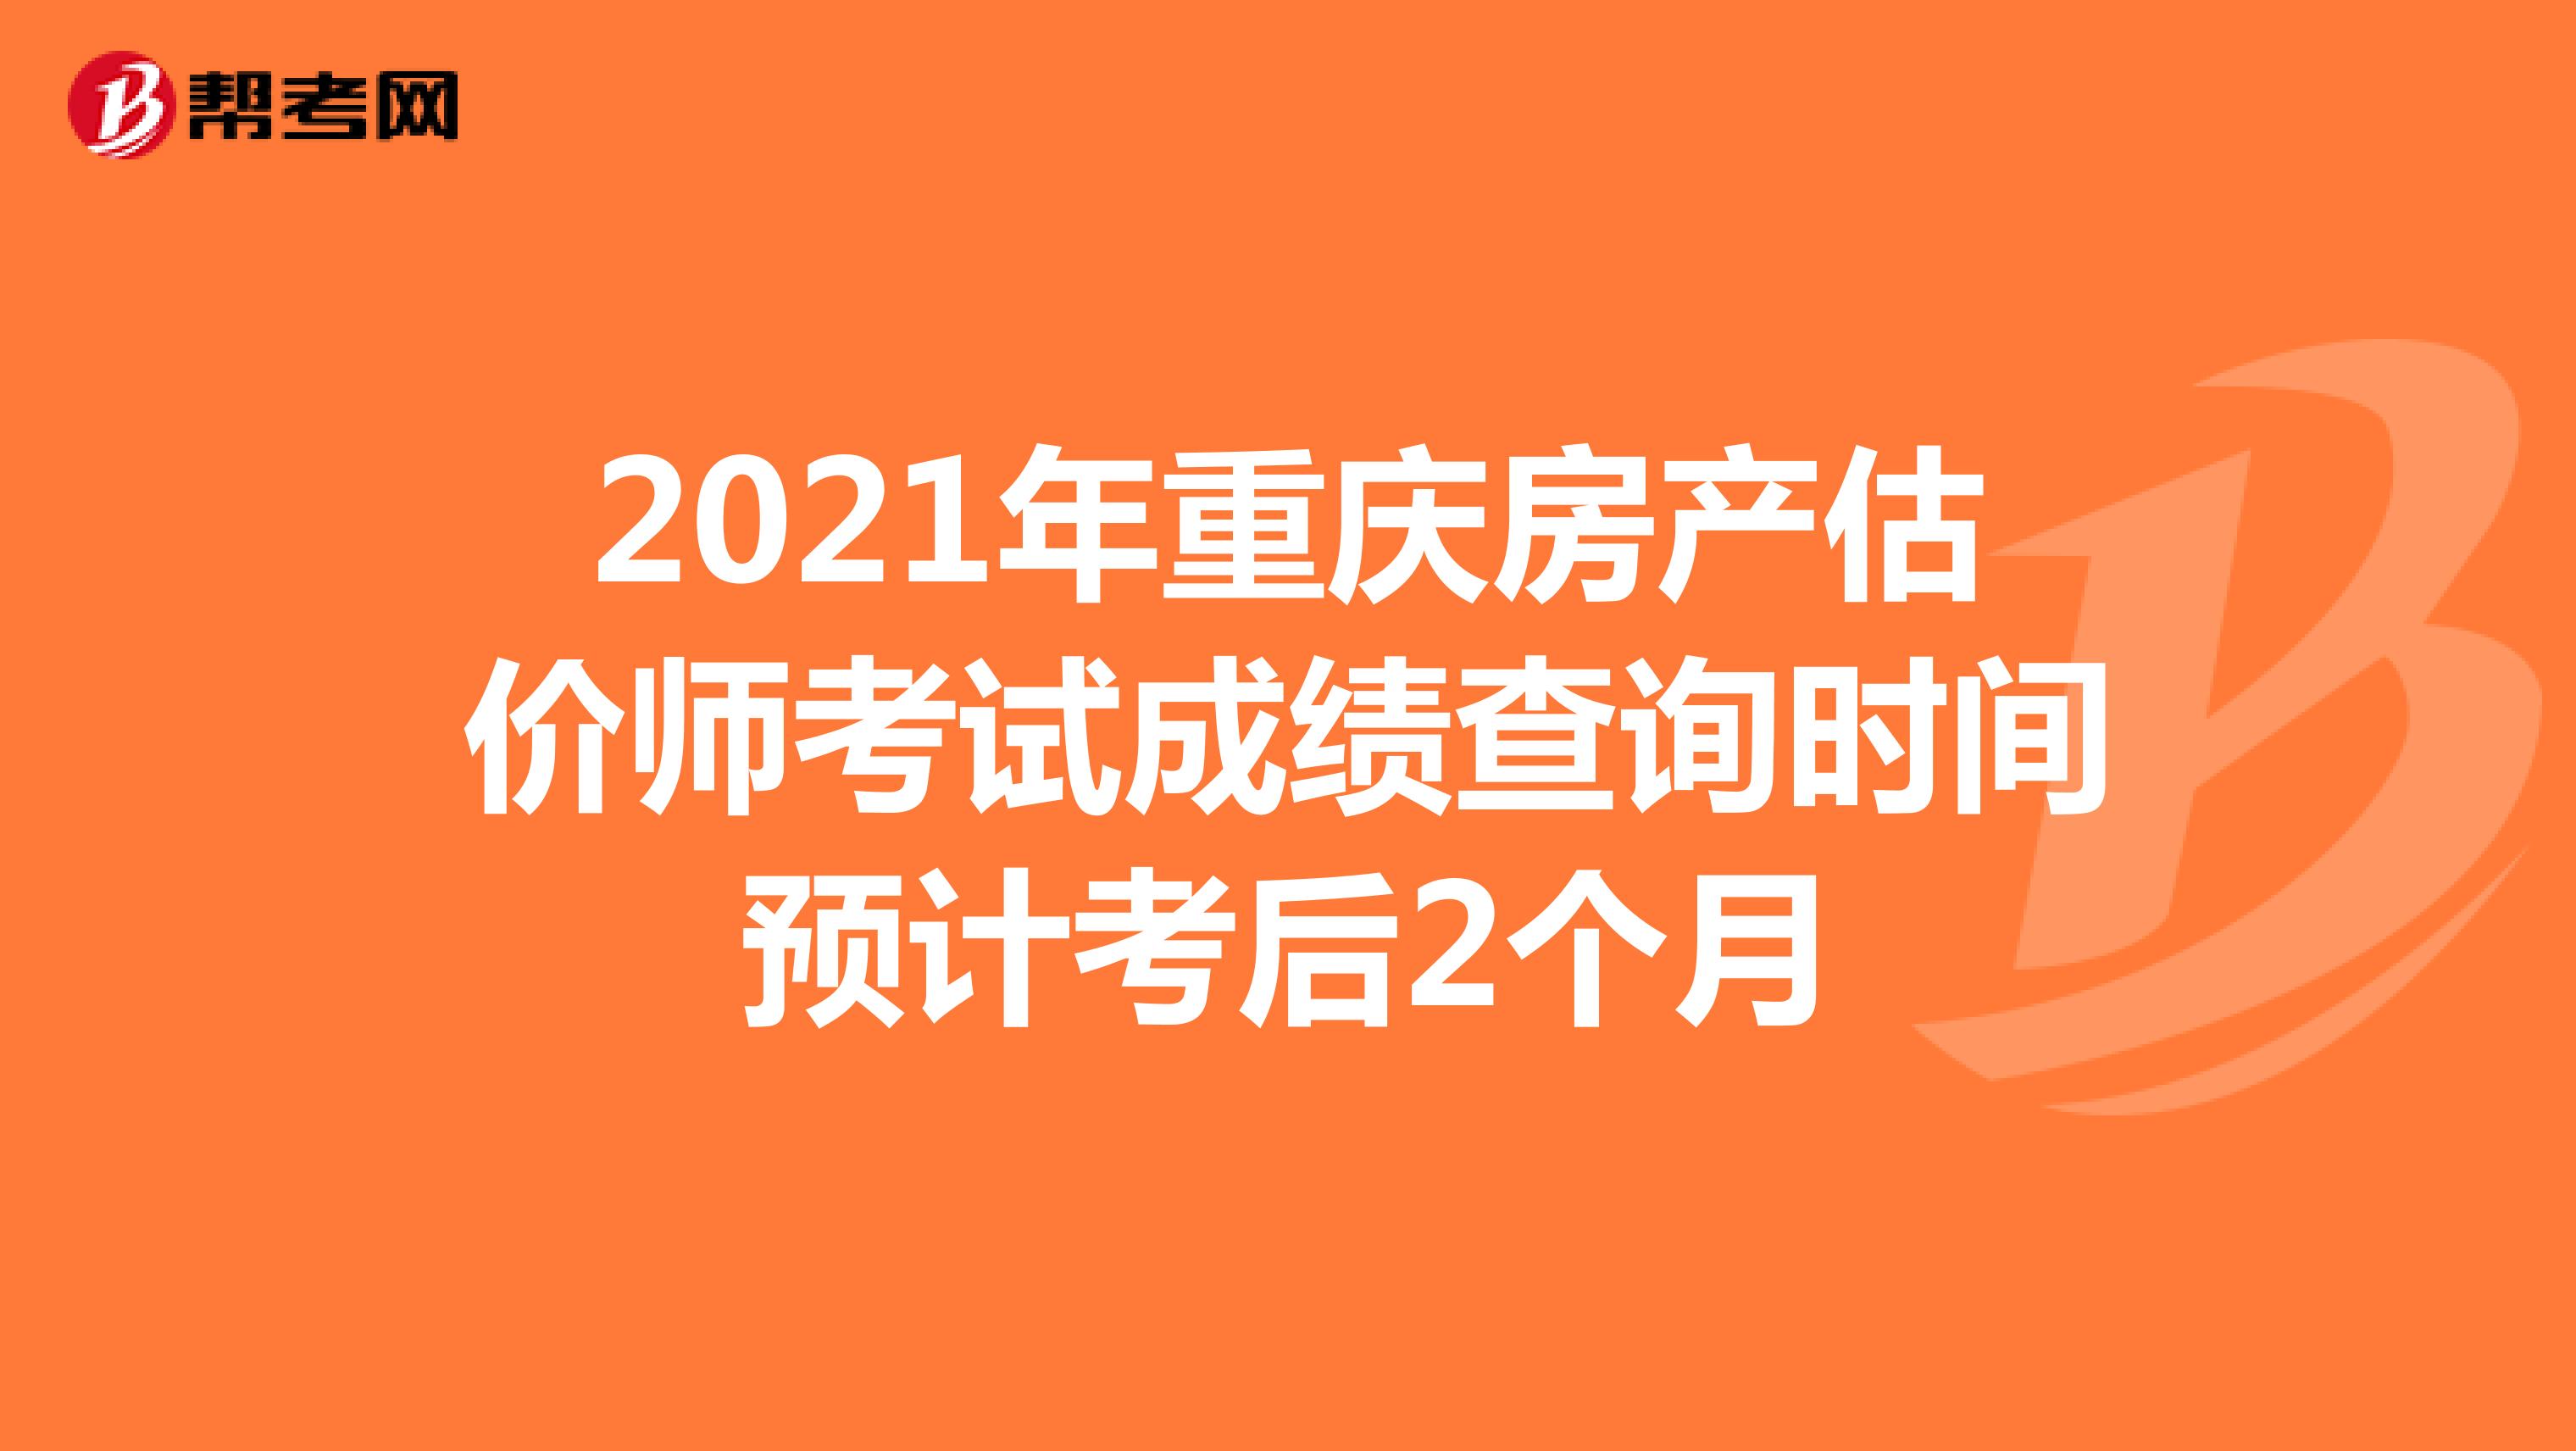 2021年重庆房产估价师考试成绩查询时间预计考后2个月